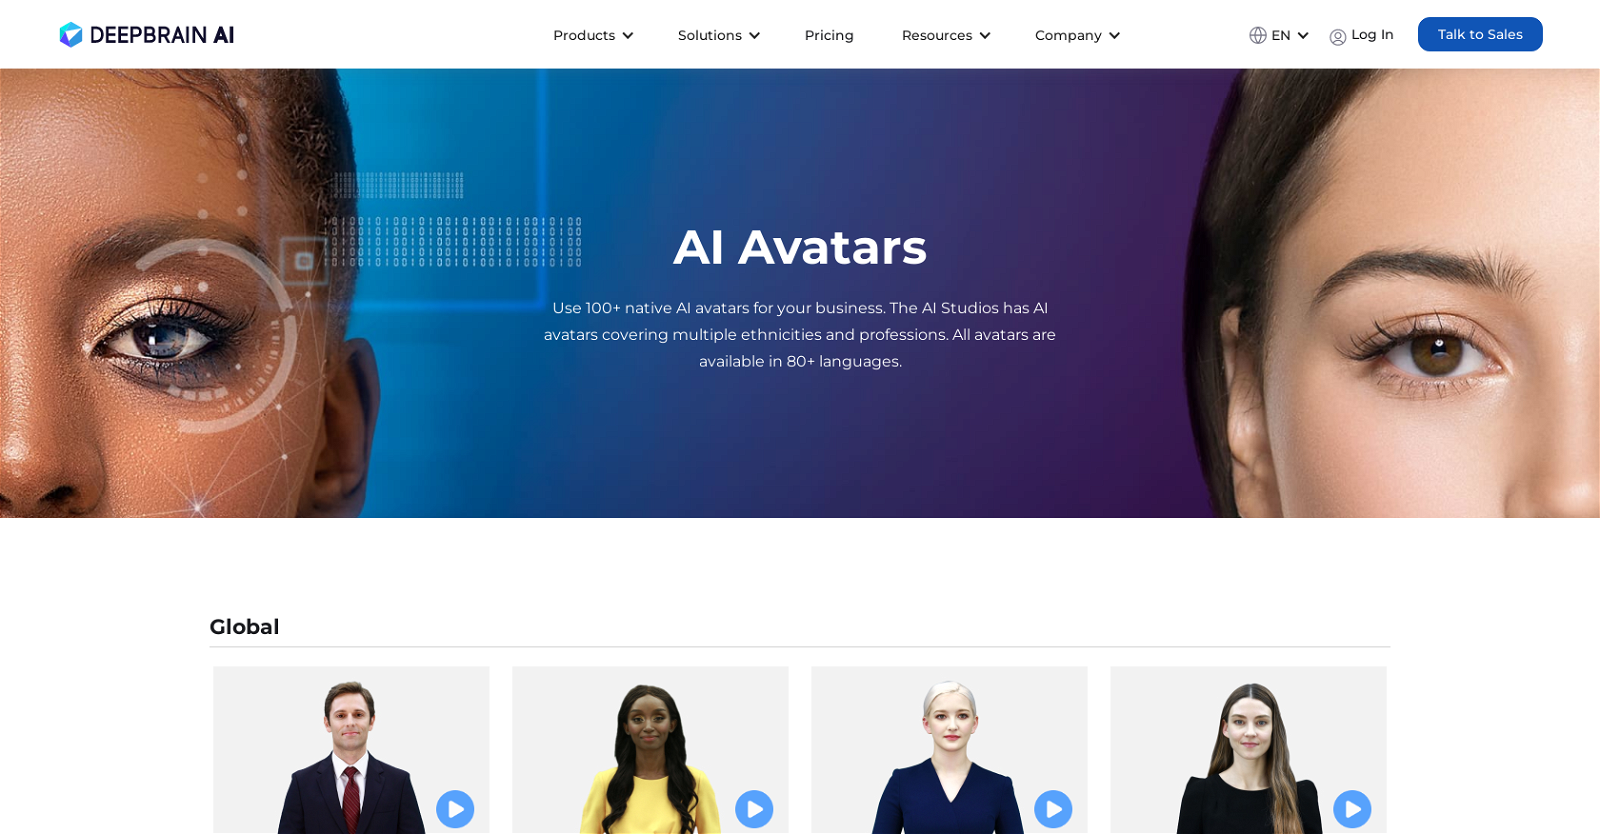 DeepBrain AIavatars website